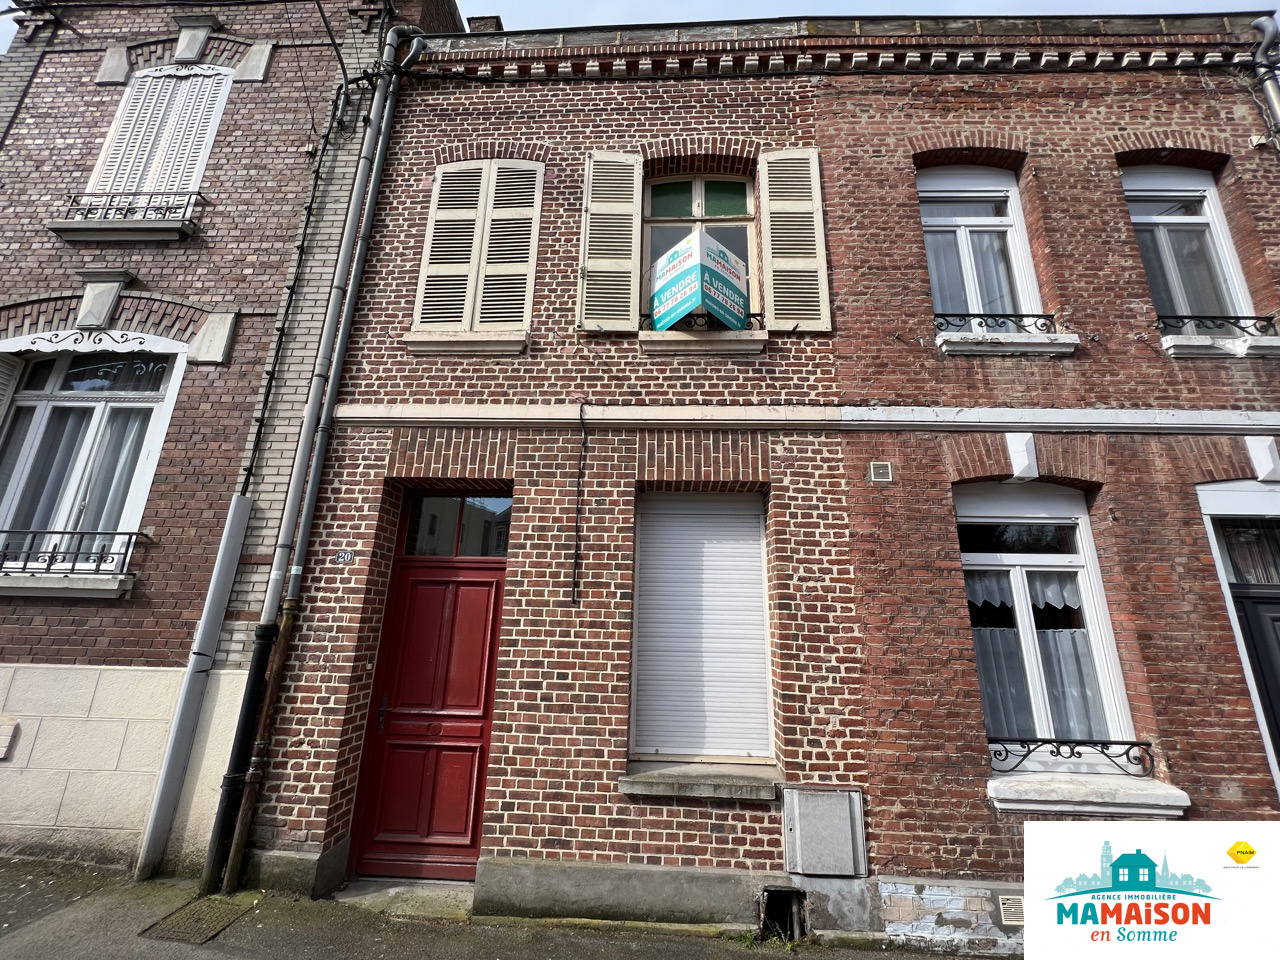 Immo80 – L'immobilier à Amiens et dans la Somme-Centre ville Albert, maison à rénover, 85,5 m2, 4 pièces, 2 chambres, jardin clos sur terrain d’environ 170 m2